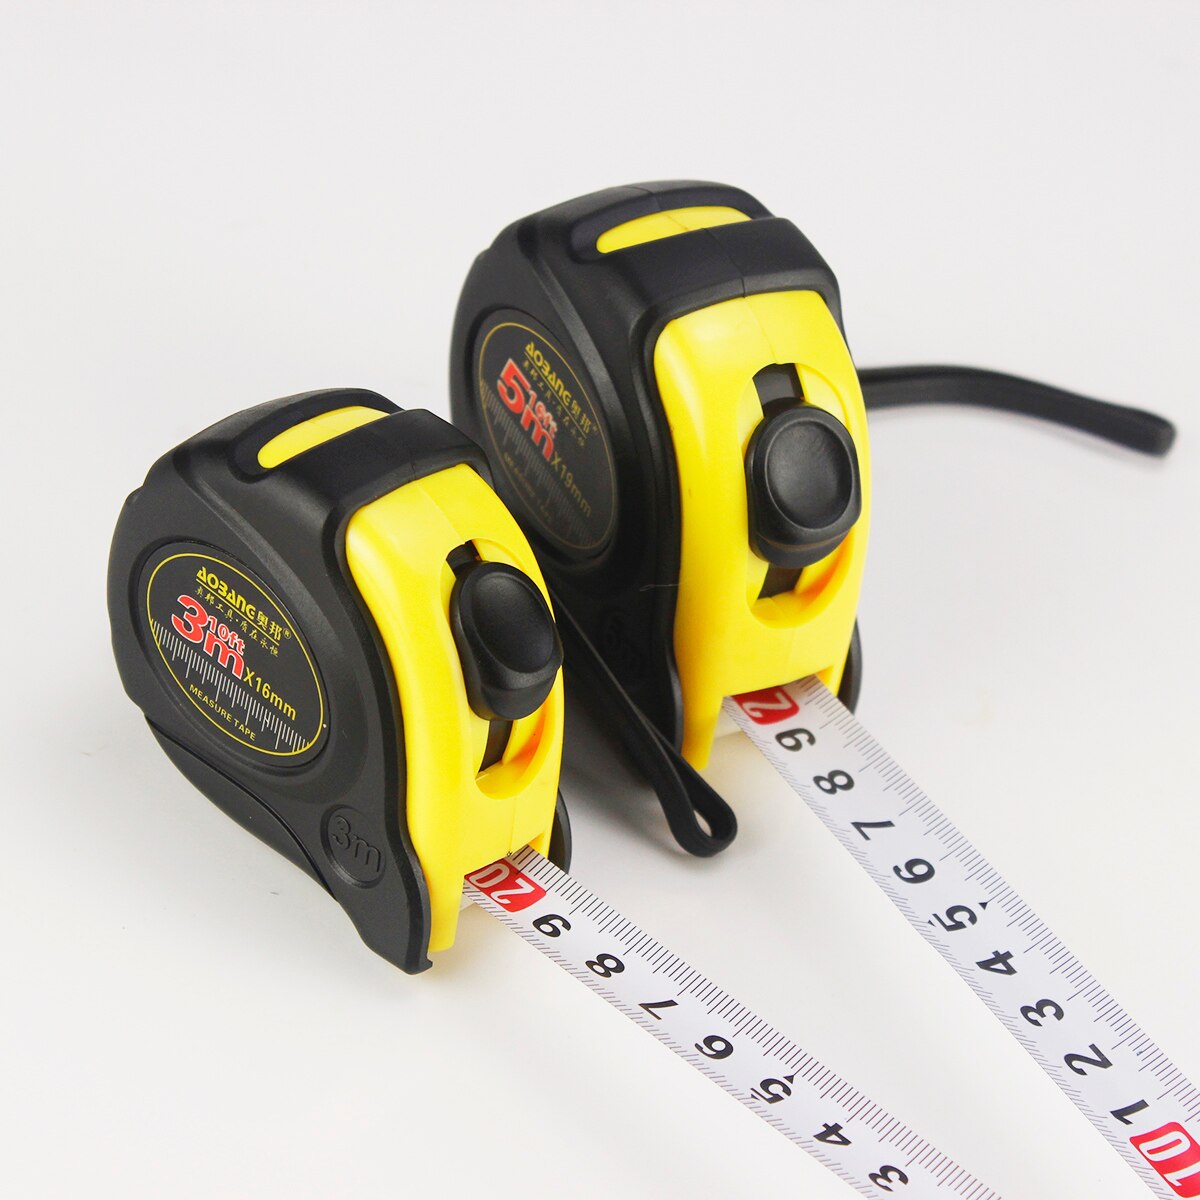 Aubon 3m/ 5m/ 7.5m måle roulette tape gummieret stål lineal målebånd fleksible tapeline tilbagetrækkelige måleværktøjer